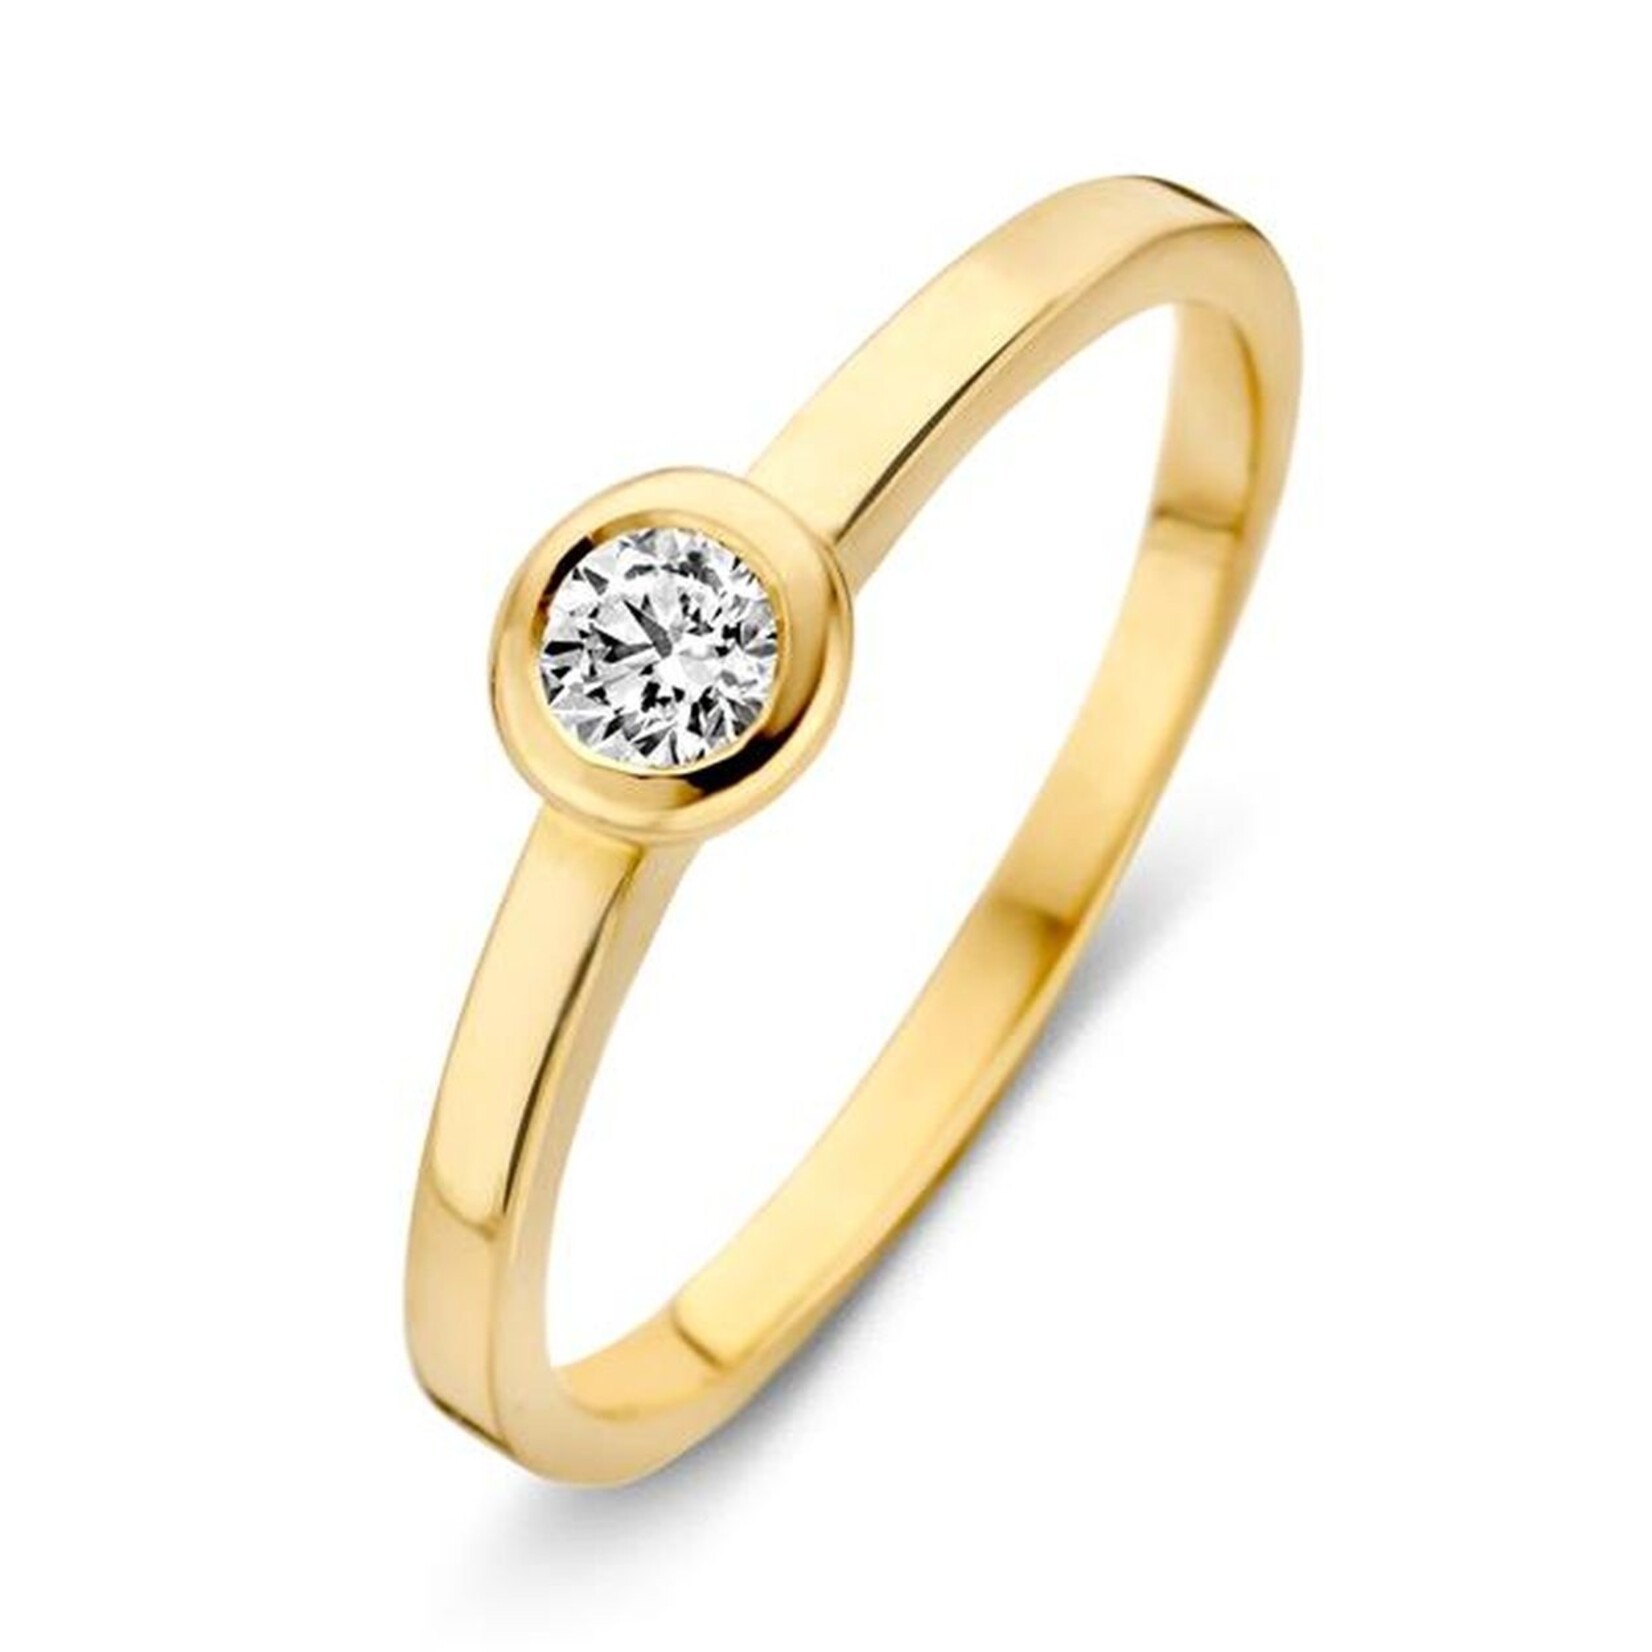 Excellent Jewelry Excellent Jewelry geelgouden ring rh126188 zirkonia maat 17.75 (56)